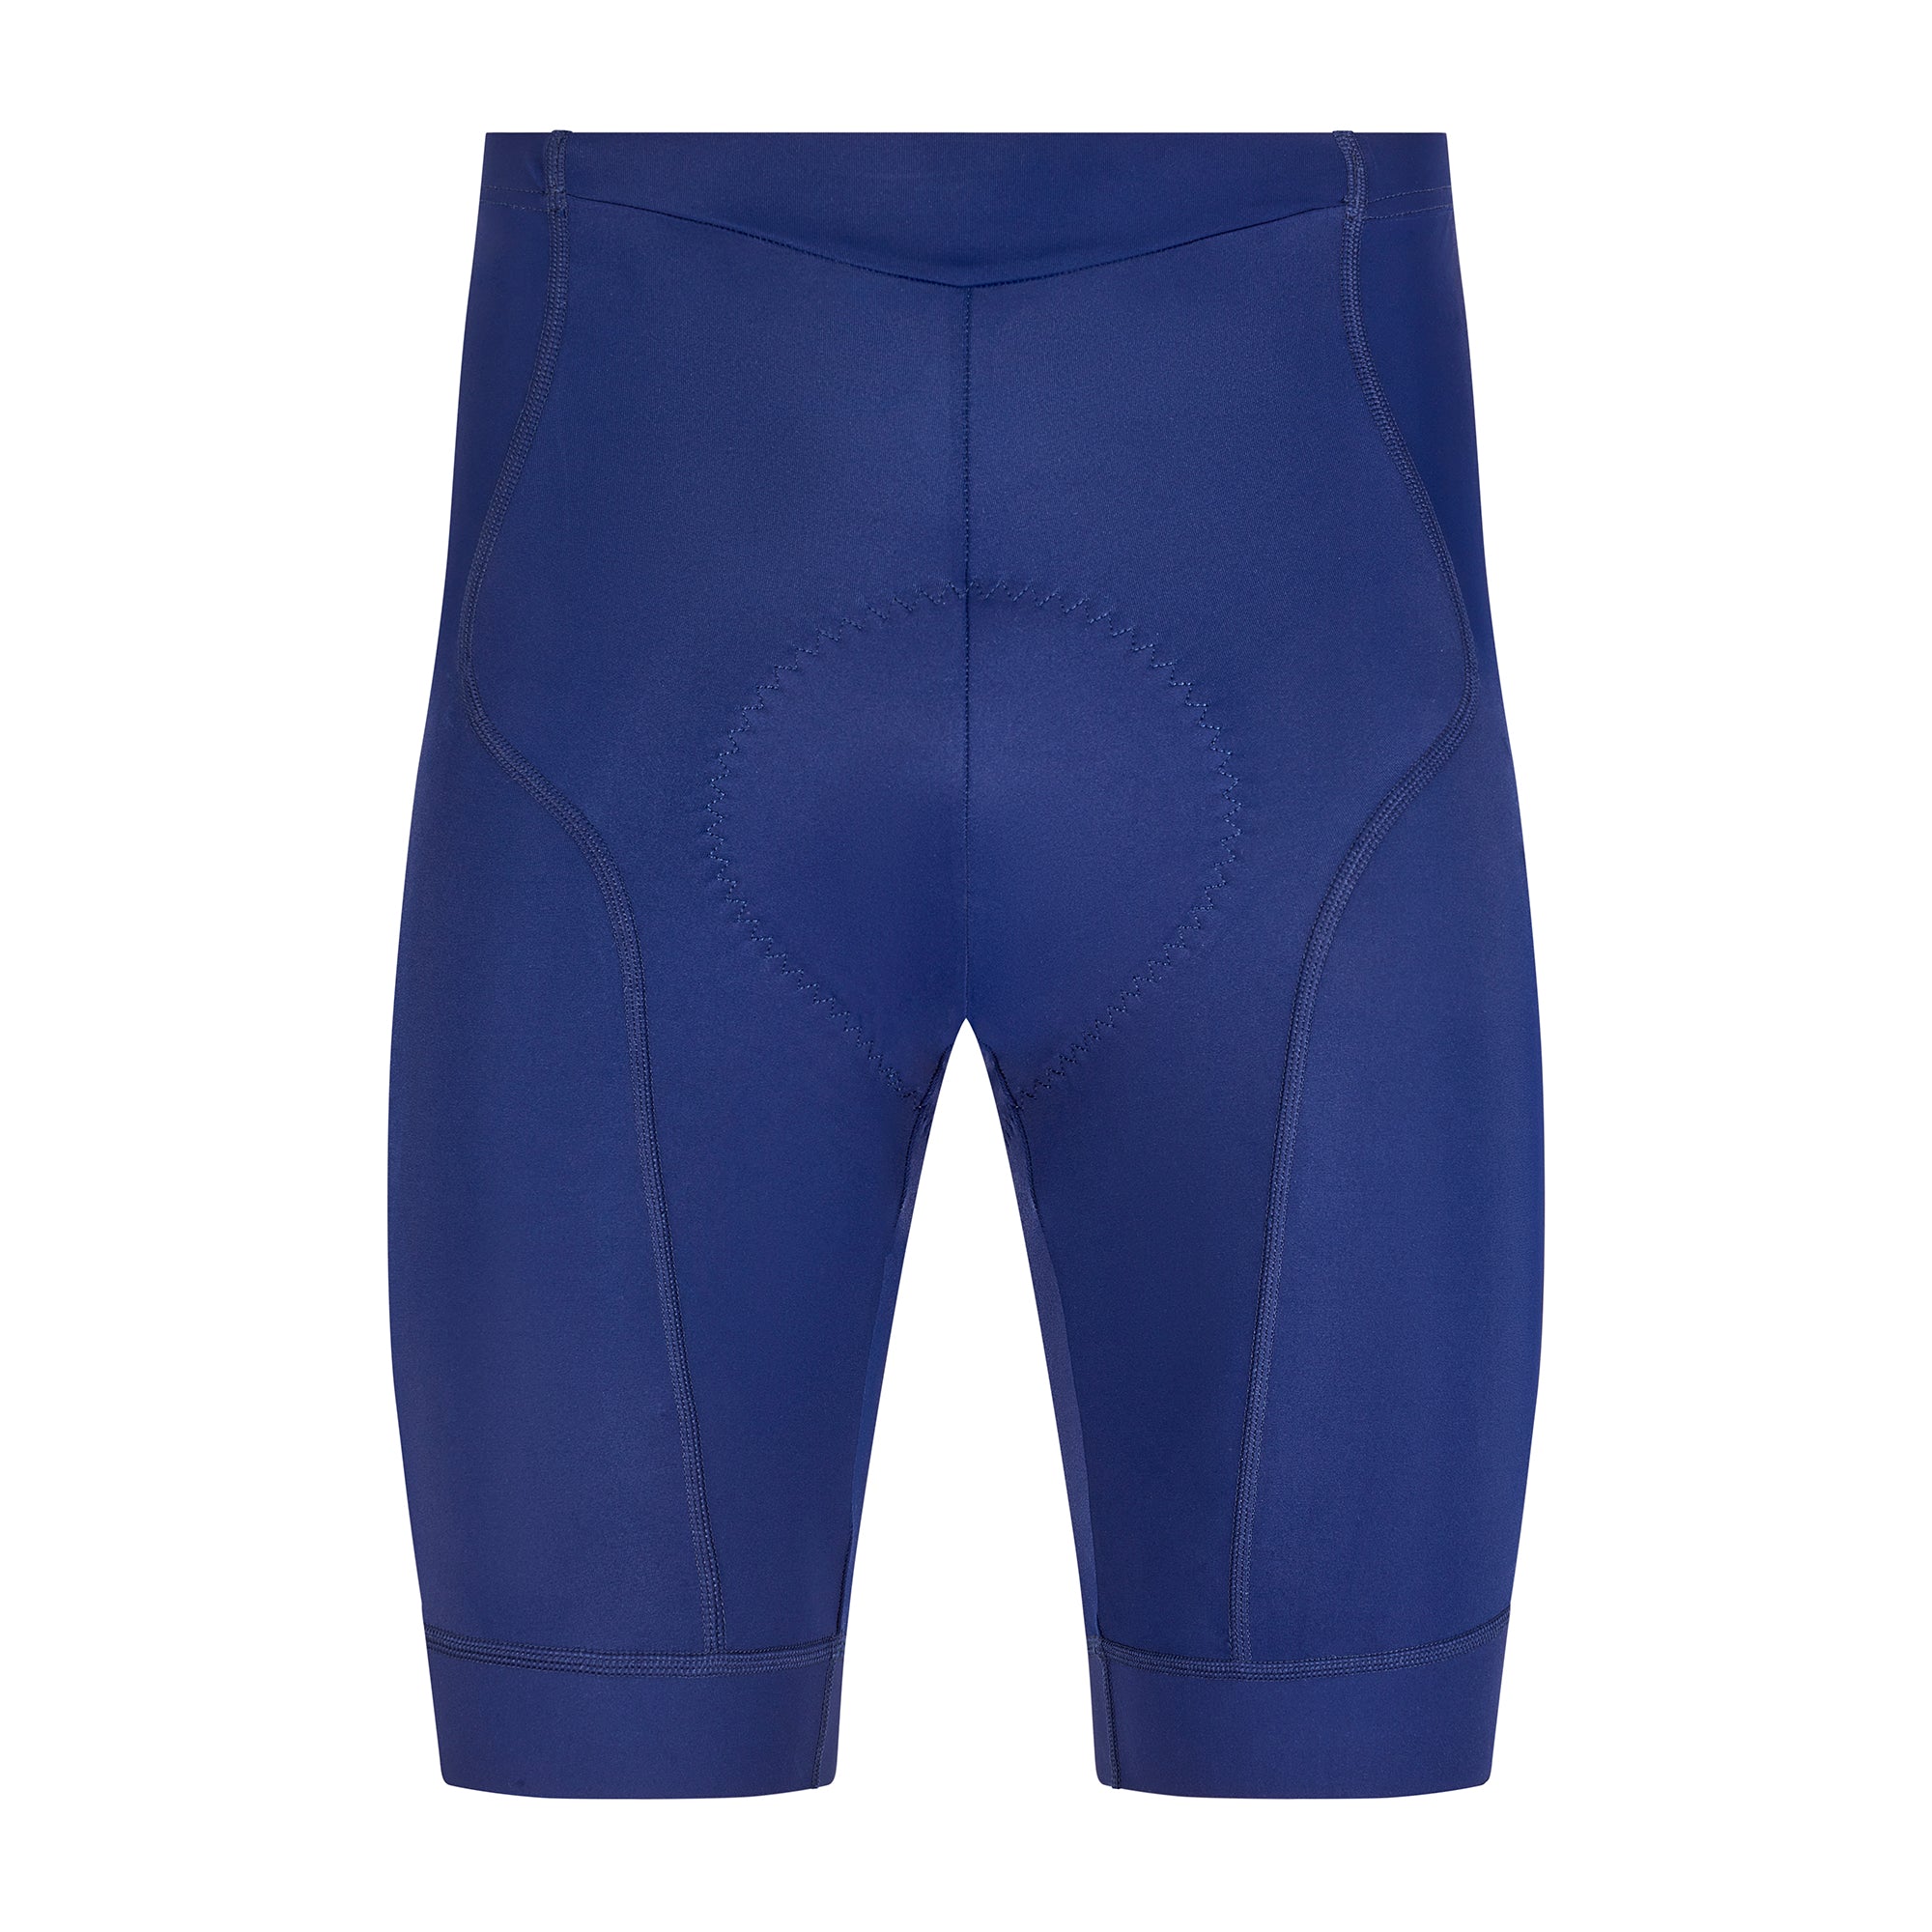 Pantalones cortos de ciclismo Essential para hombre - Azul marino